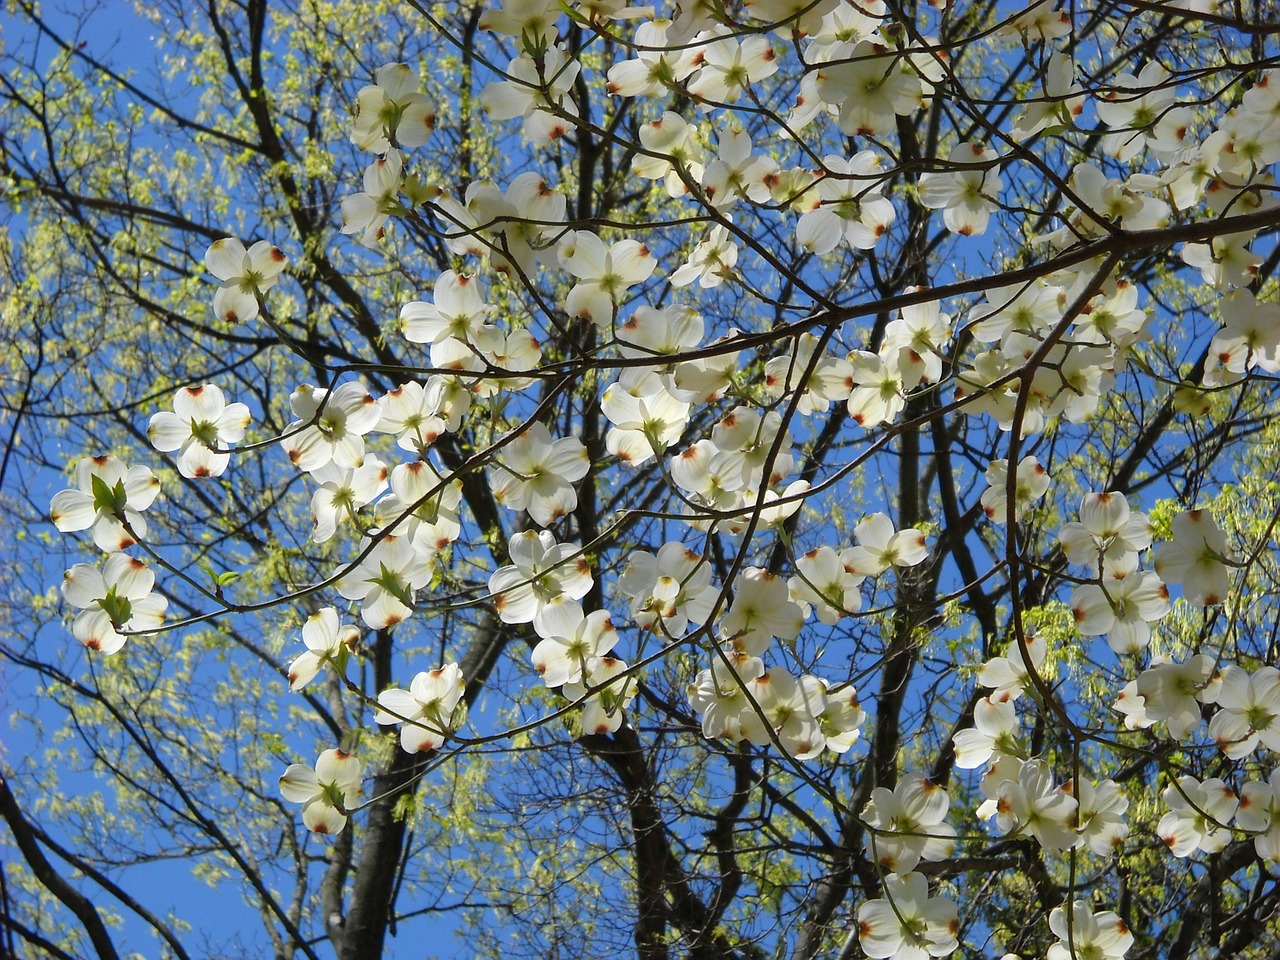 Flowering dogwood - Common dogwood